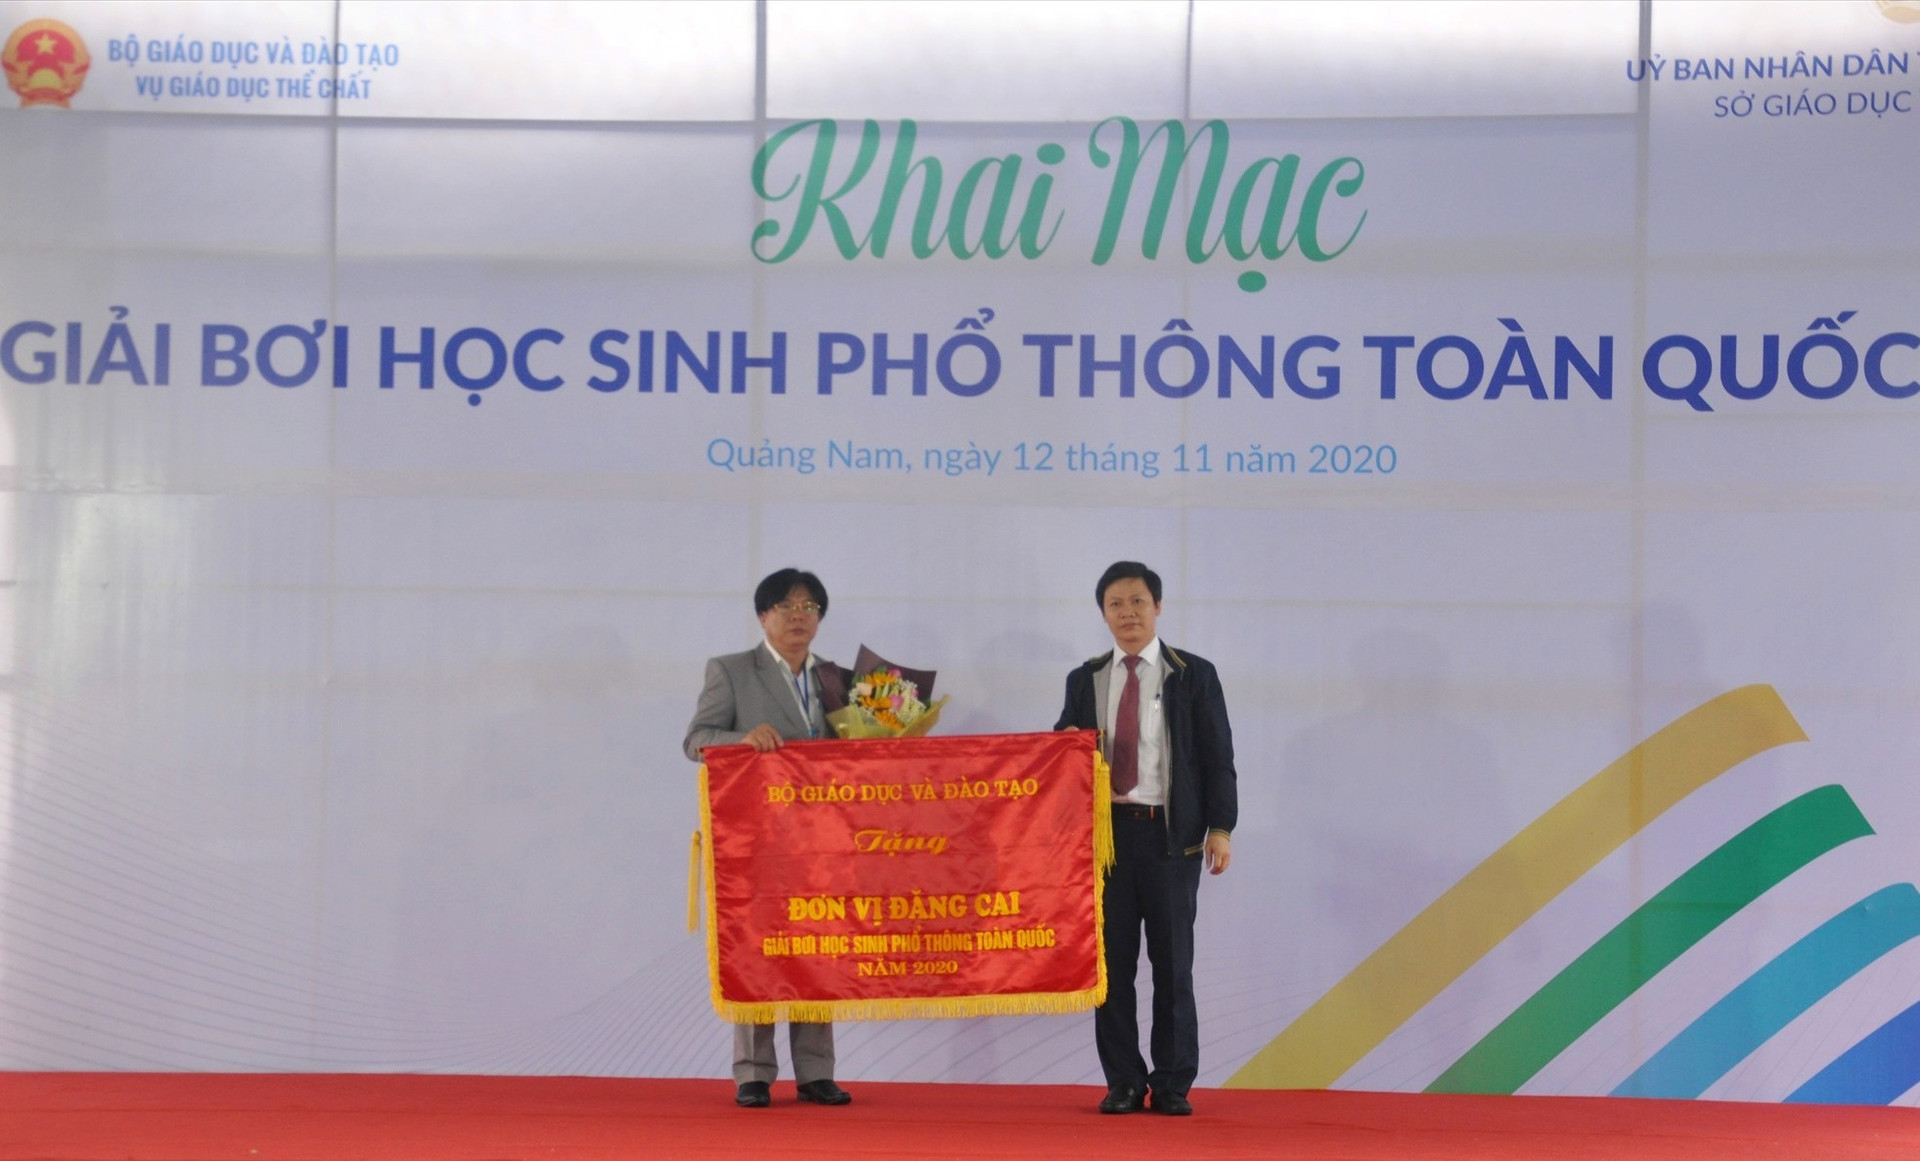 Vụ trưởng Vụ Giáo dục thể chất Bộ GD-ĐT Nguyễn Thanh Đề tặng cờ đăng cai cho Sở GD-ĐT Quảng Nam. Ảnh: X.P